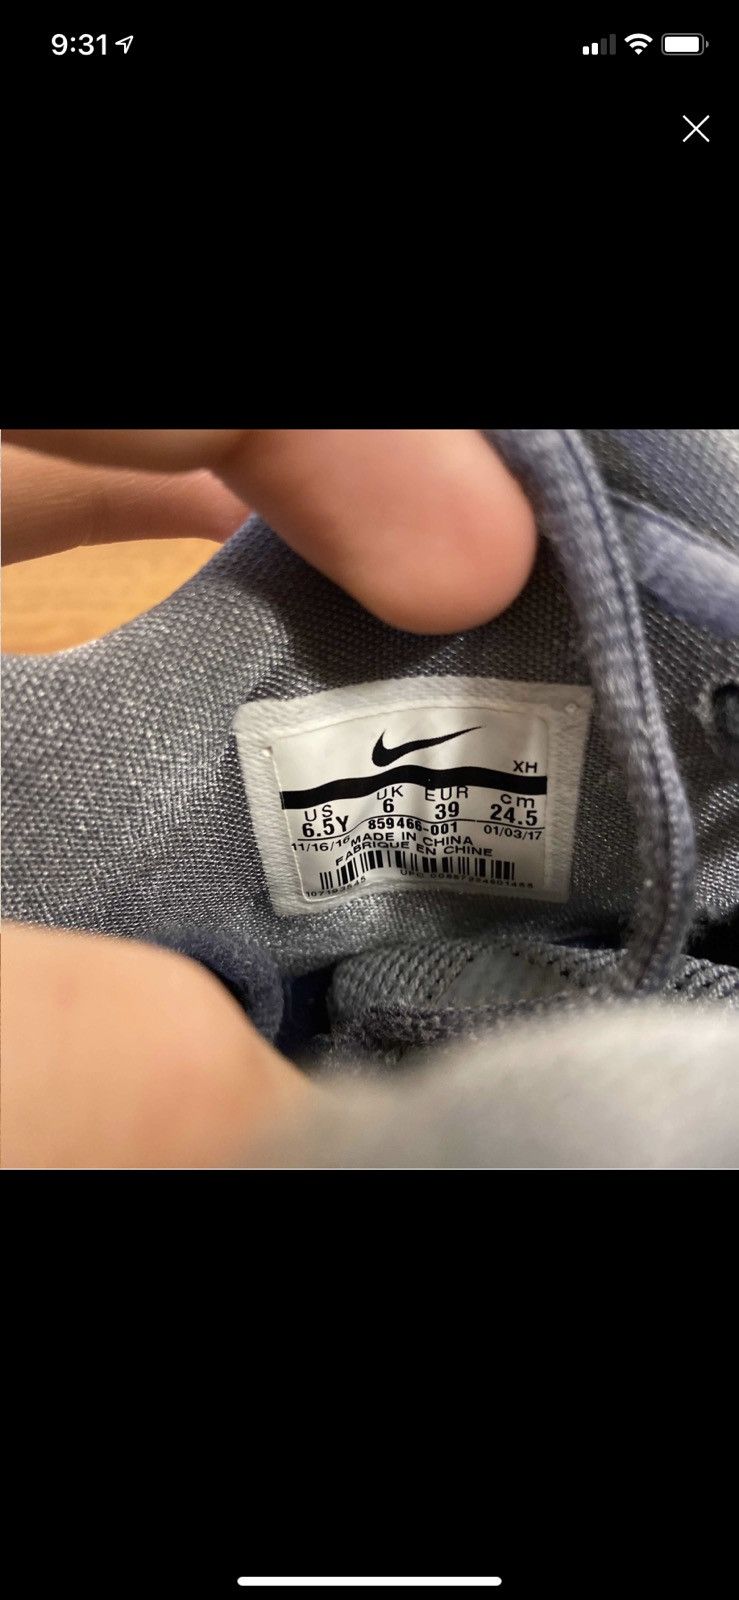 Nike Kyrie 3 Cool Grey Size US 6.5 / EU 39-40 - 7 Thumbnail